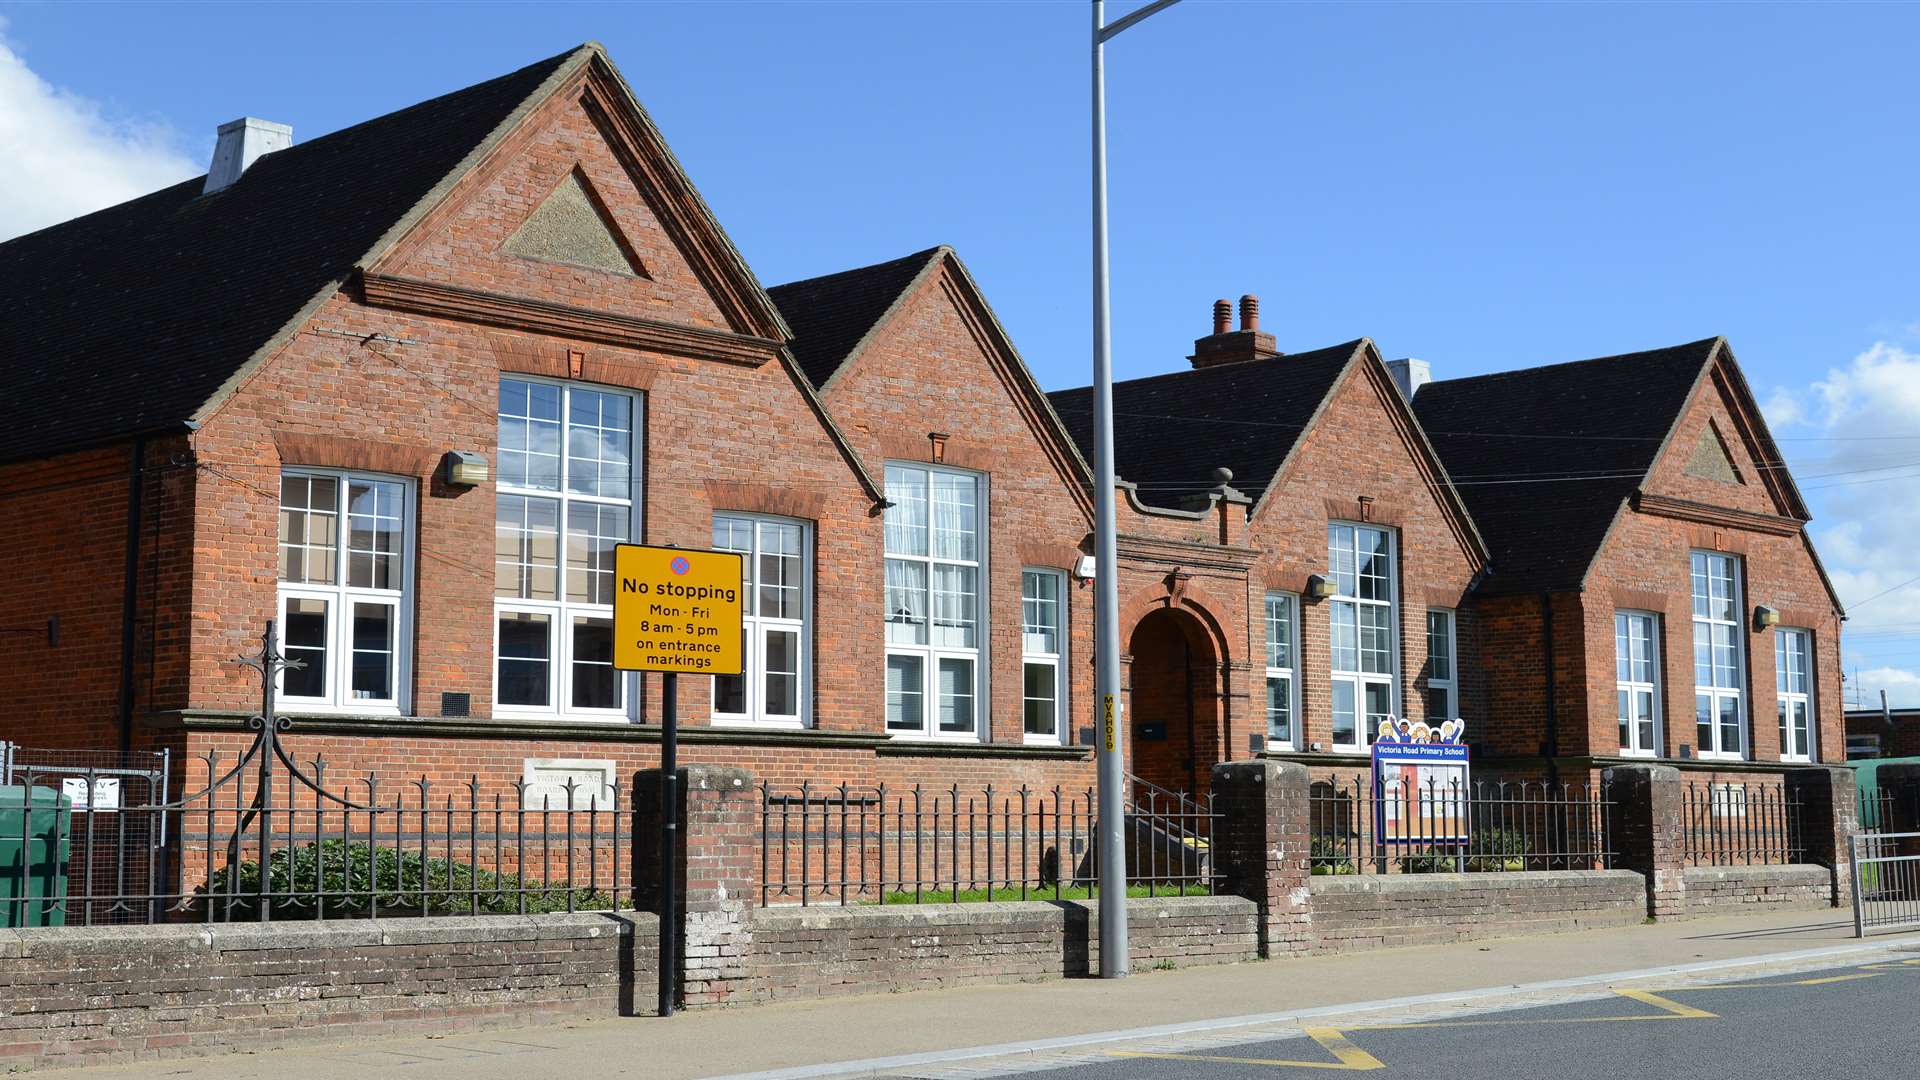 Victoria Road Primary School, Ashford